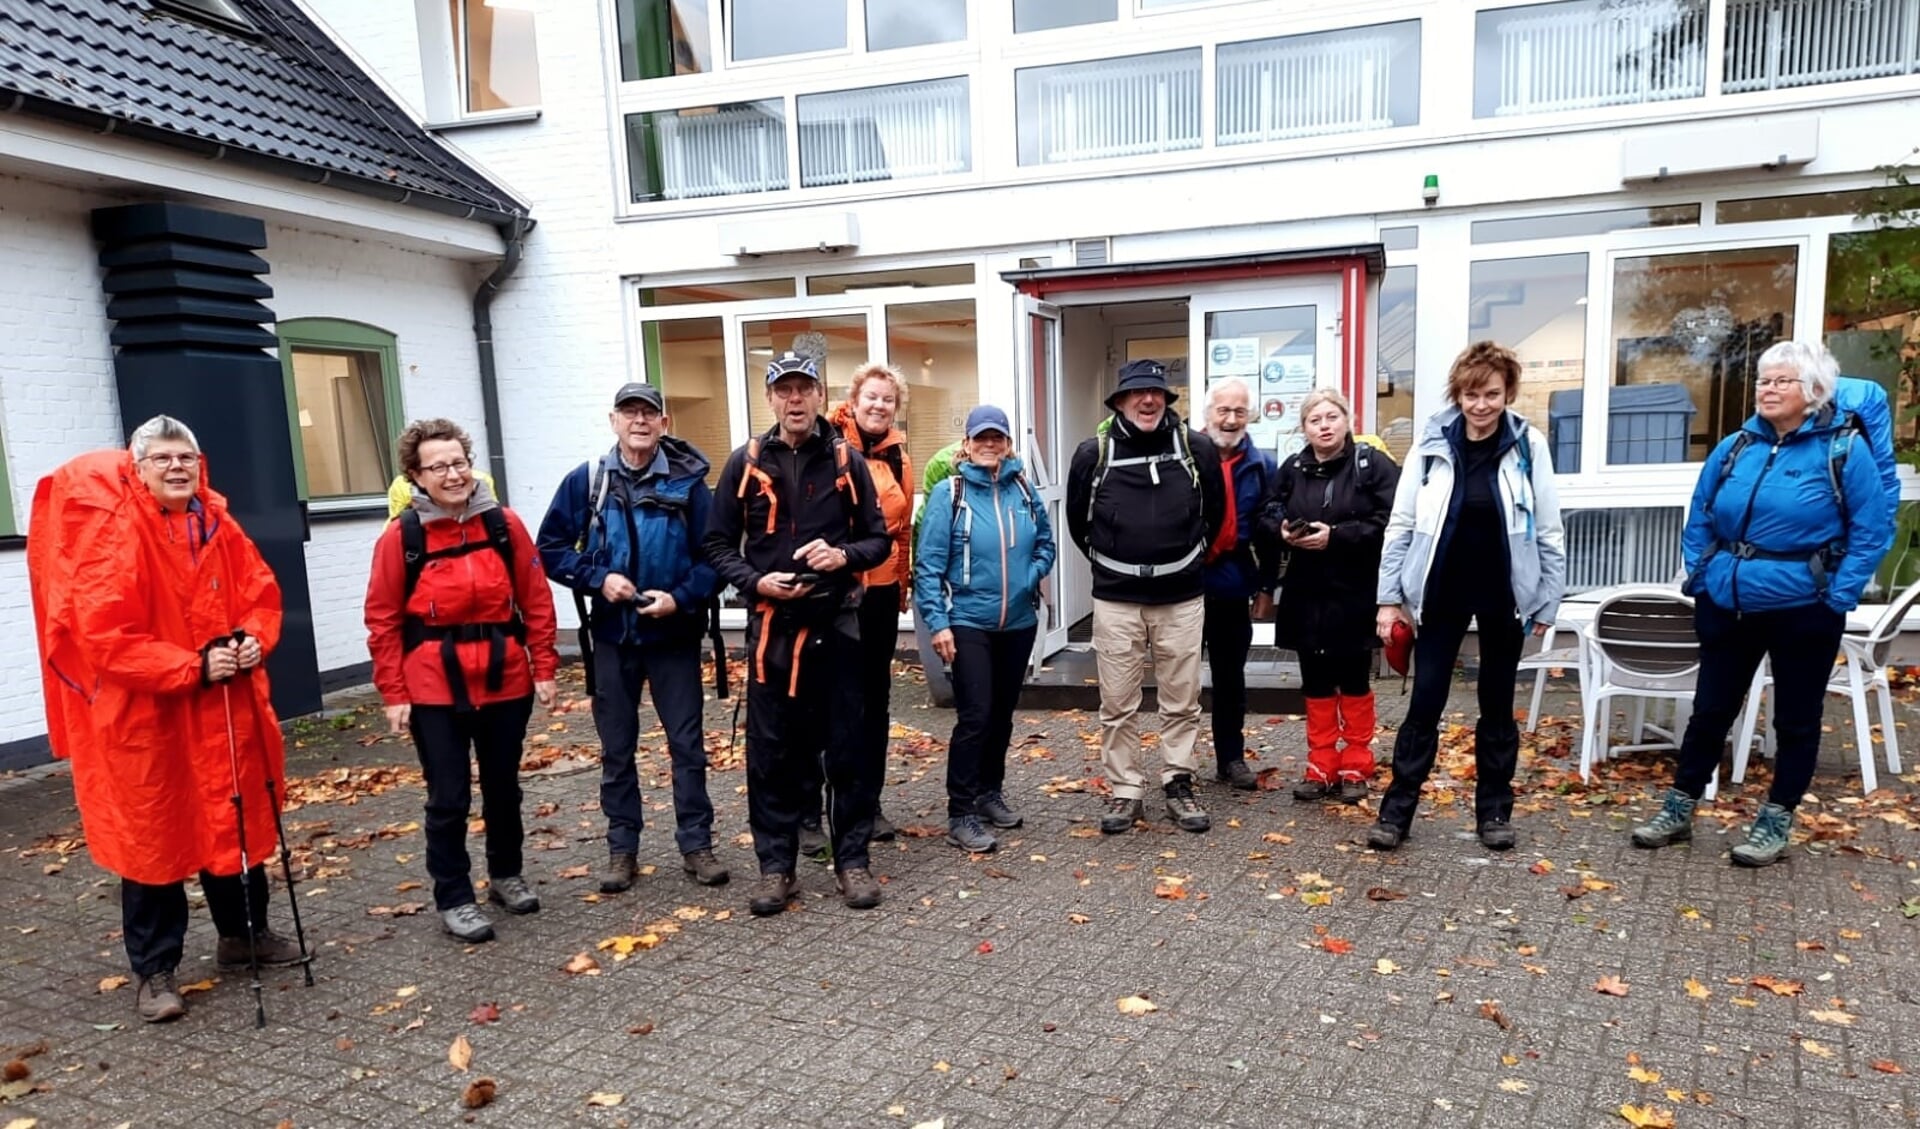 De wandelaars voor de Jugendherberge in Kleef. Foto: Everhardt Lubbers
